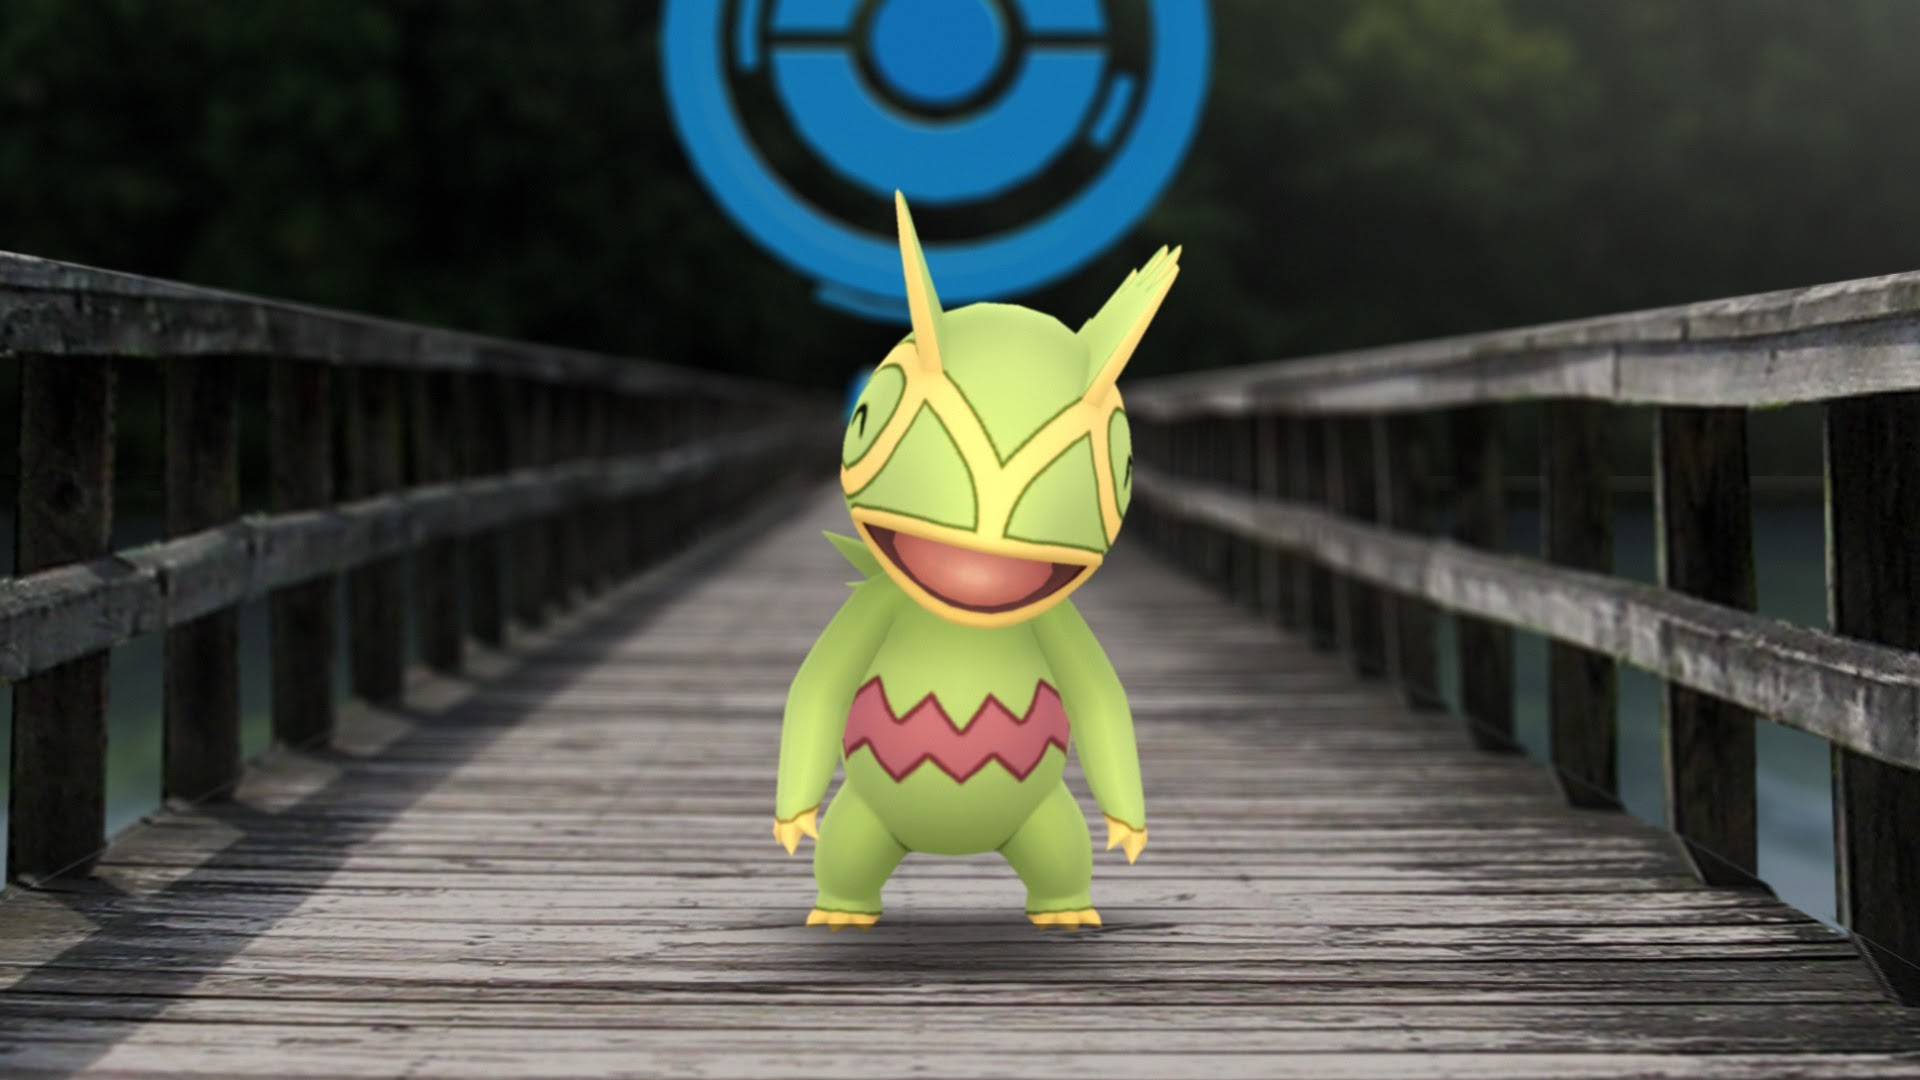 Pokémon GO finalmente completa a PokéDex da Geração 3, cinco anos